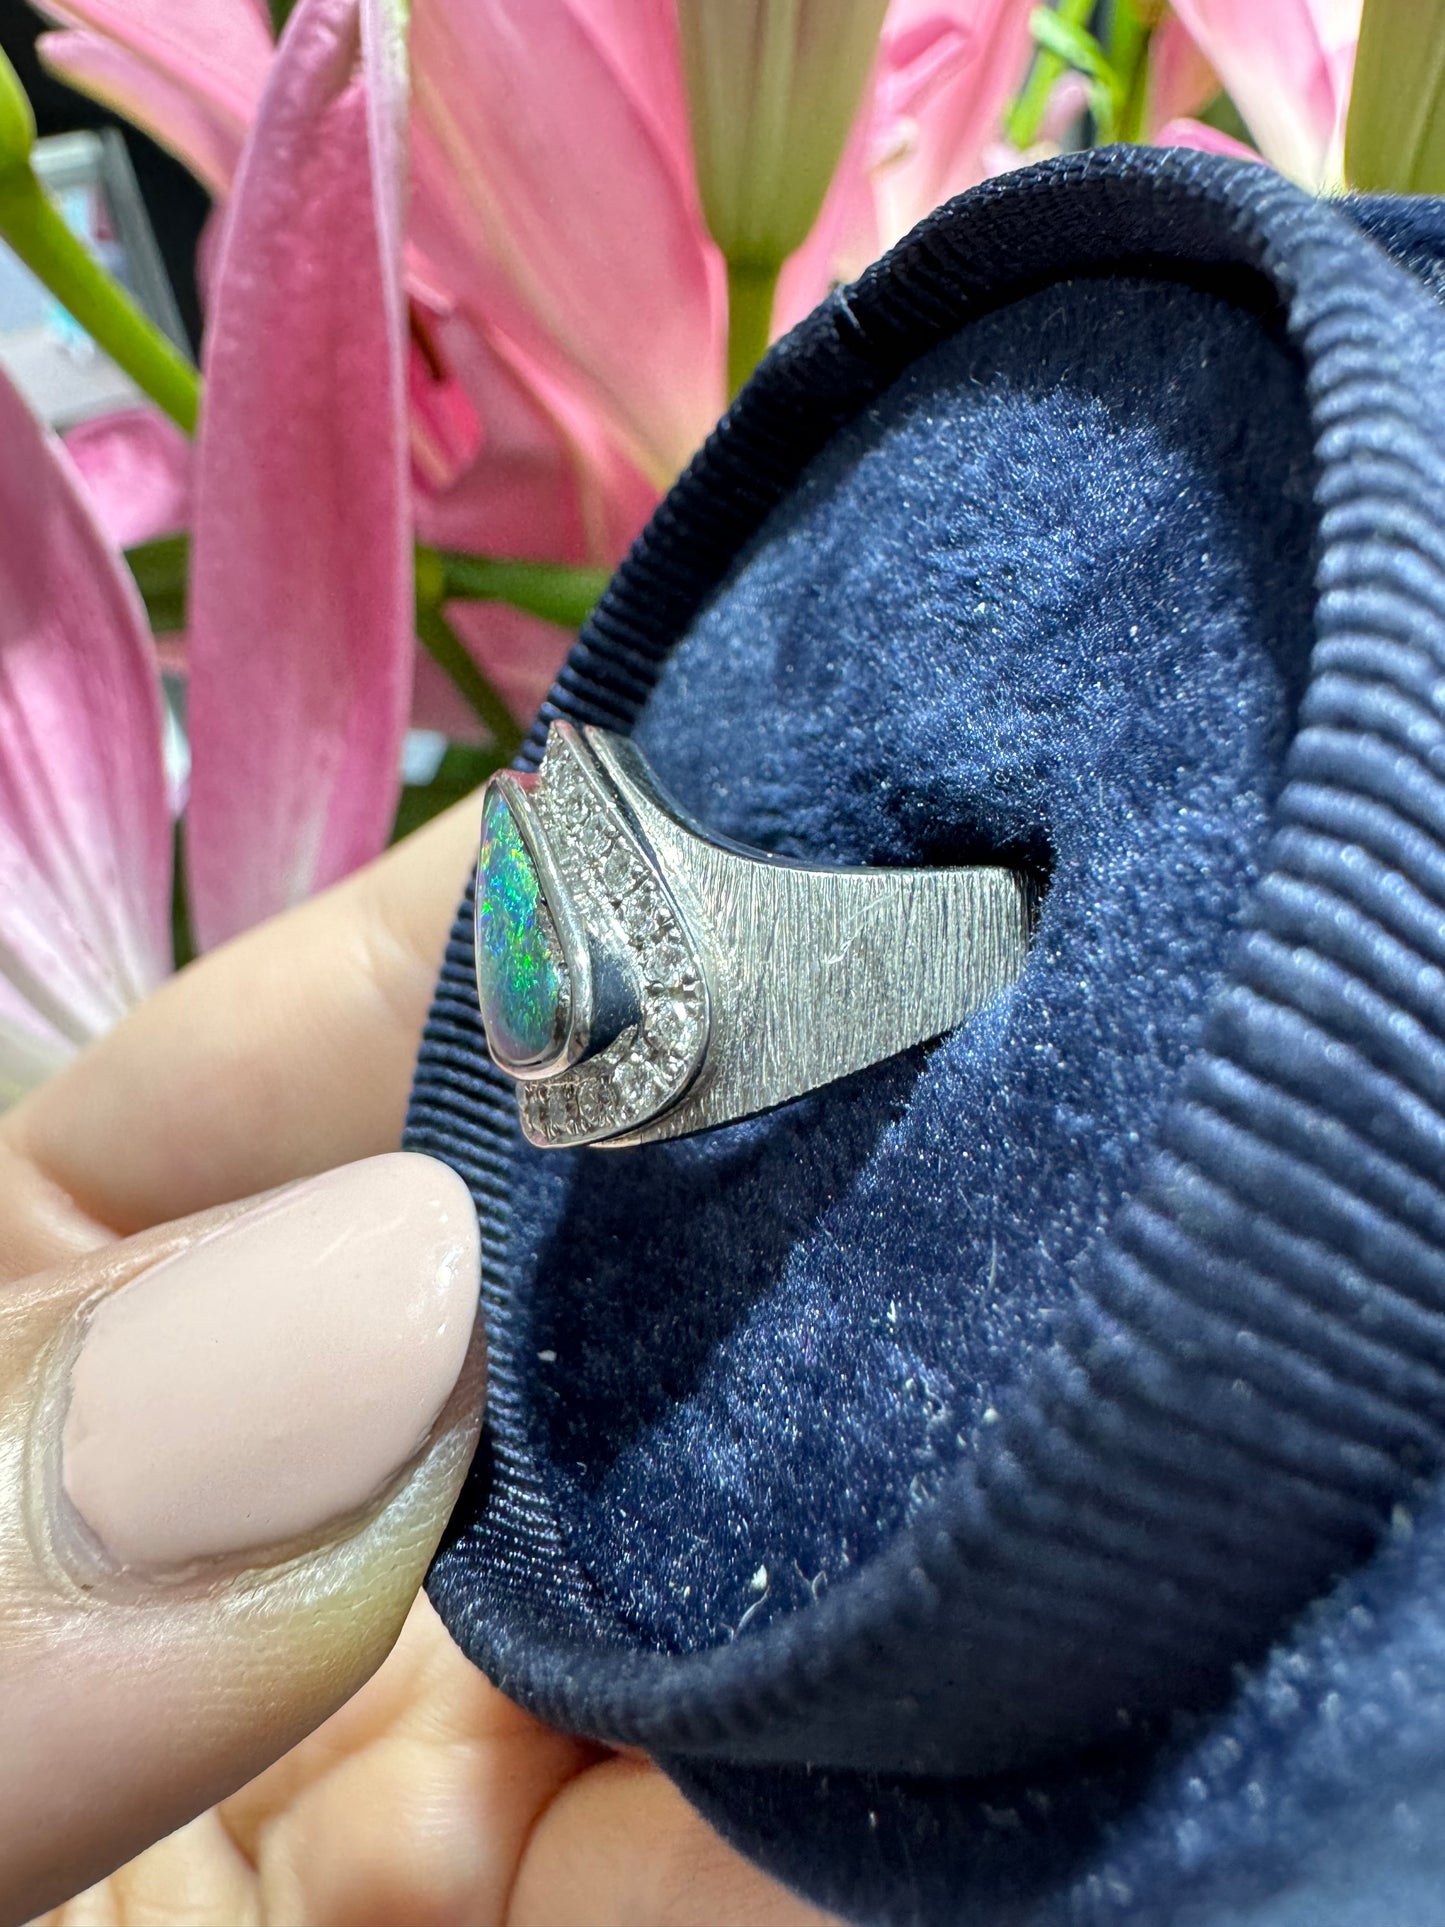 Boulder Opal Freeform Ring